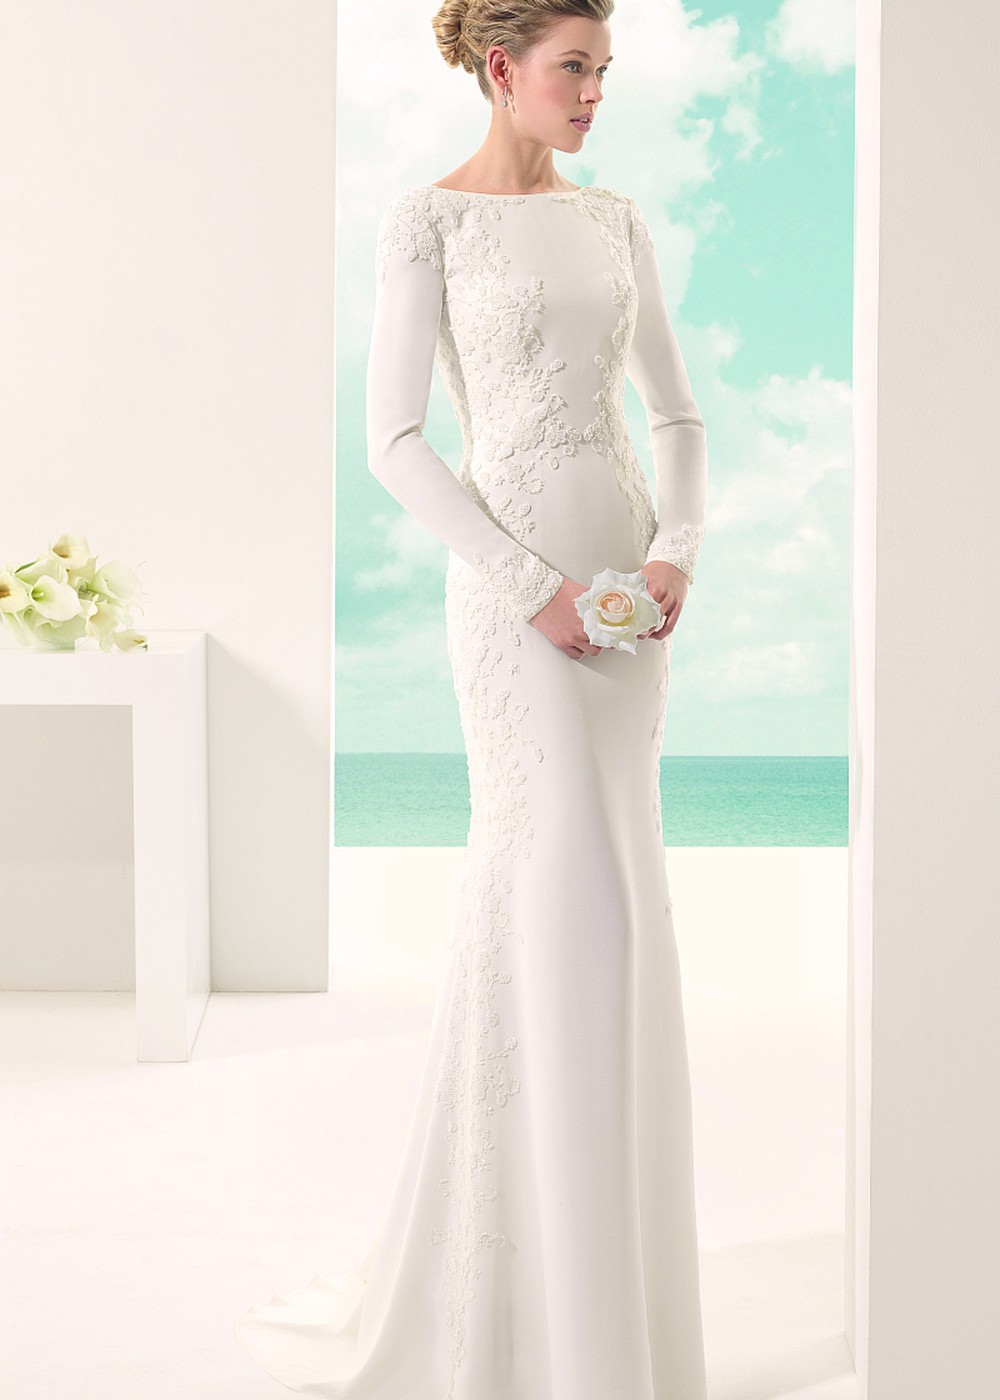 Свадебное платье VENUS входит в линейку самых популярных моделей в стиле “годе”. Созданное из плотного крепа, оно смотрелось бы весьма лаконично, если бы не мастерская расшивка бисером по всему полотну.  V-образный вырез по спинке.